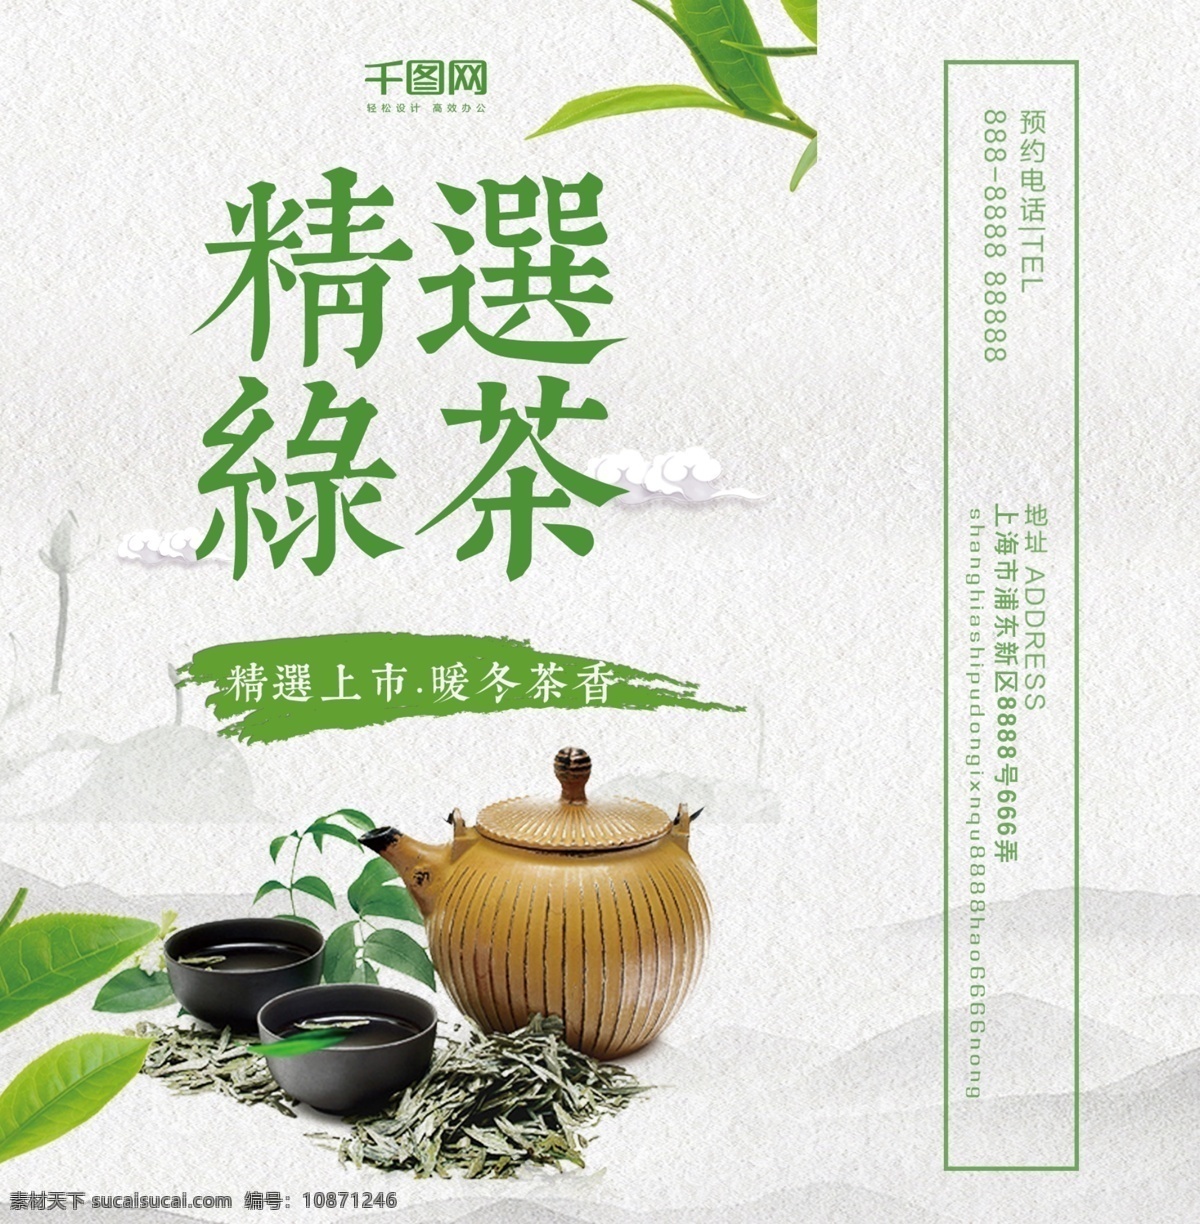 包装 茶杯 茶壶 茶叶 简约 精品 绿茶 山水 中国风 中国 风 包装设计